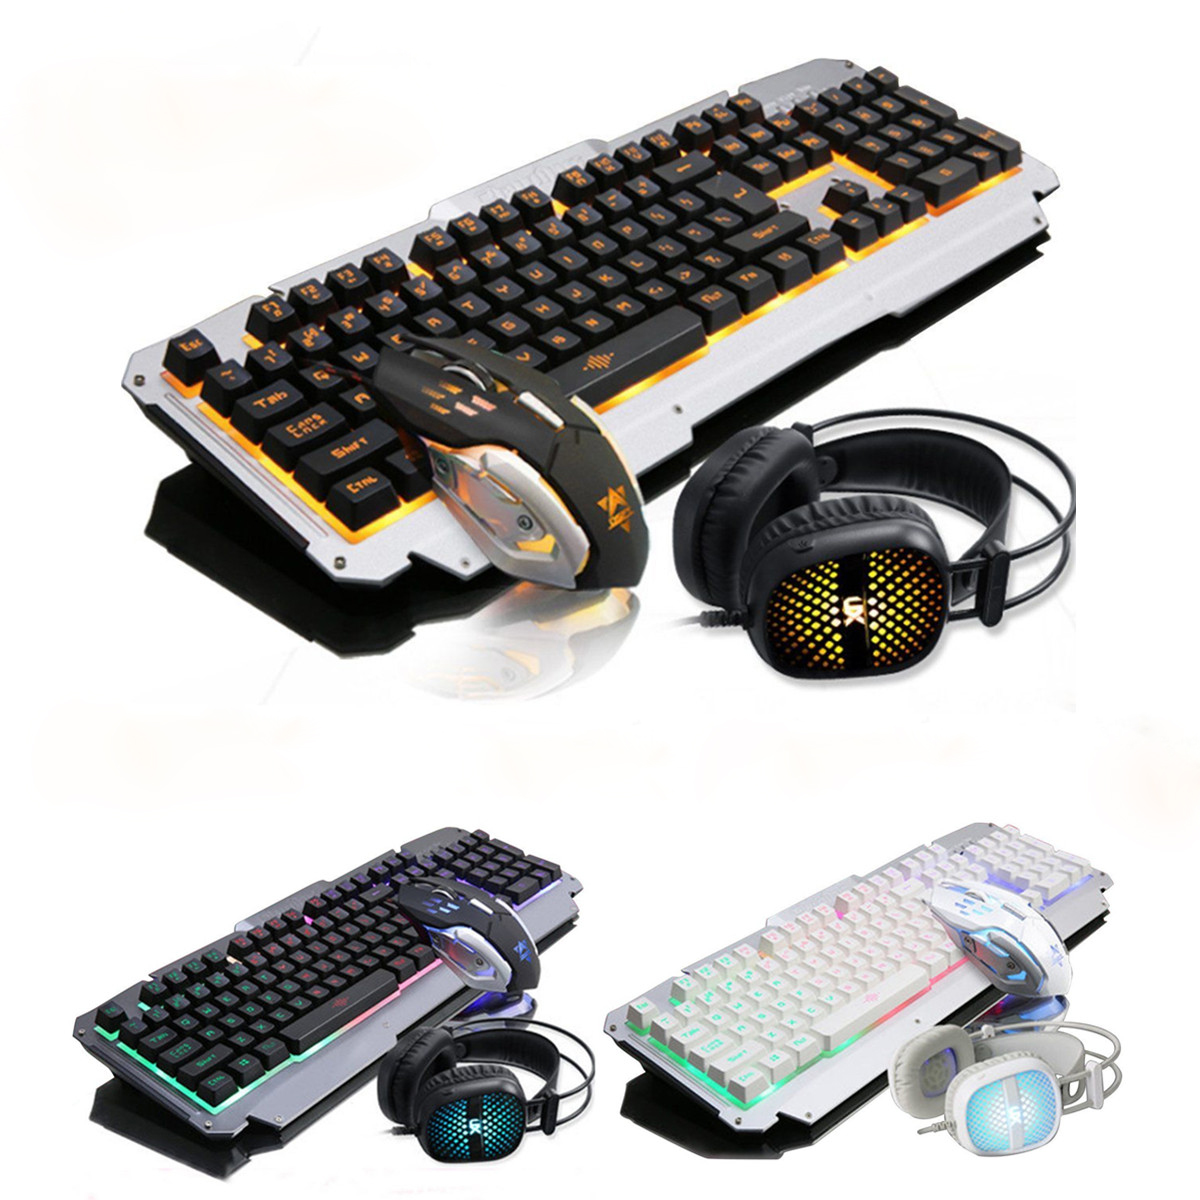 

USB Проводной Желтый LED Подсветка Colorful Механический Handfeel Gaming Клавиатура Мышь Комбинированные наушники